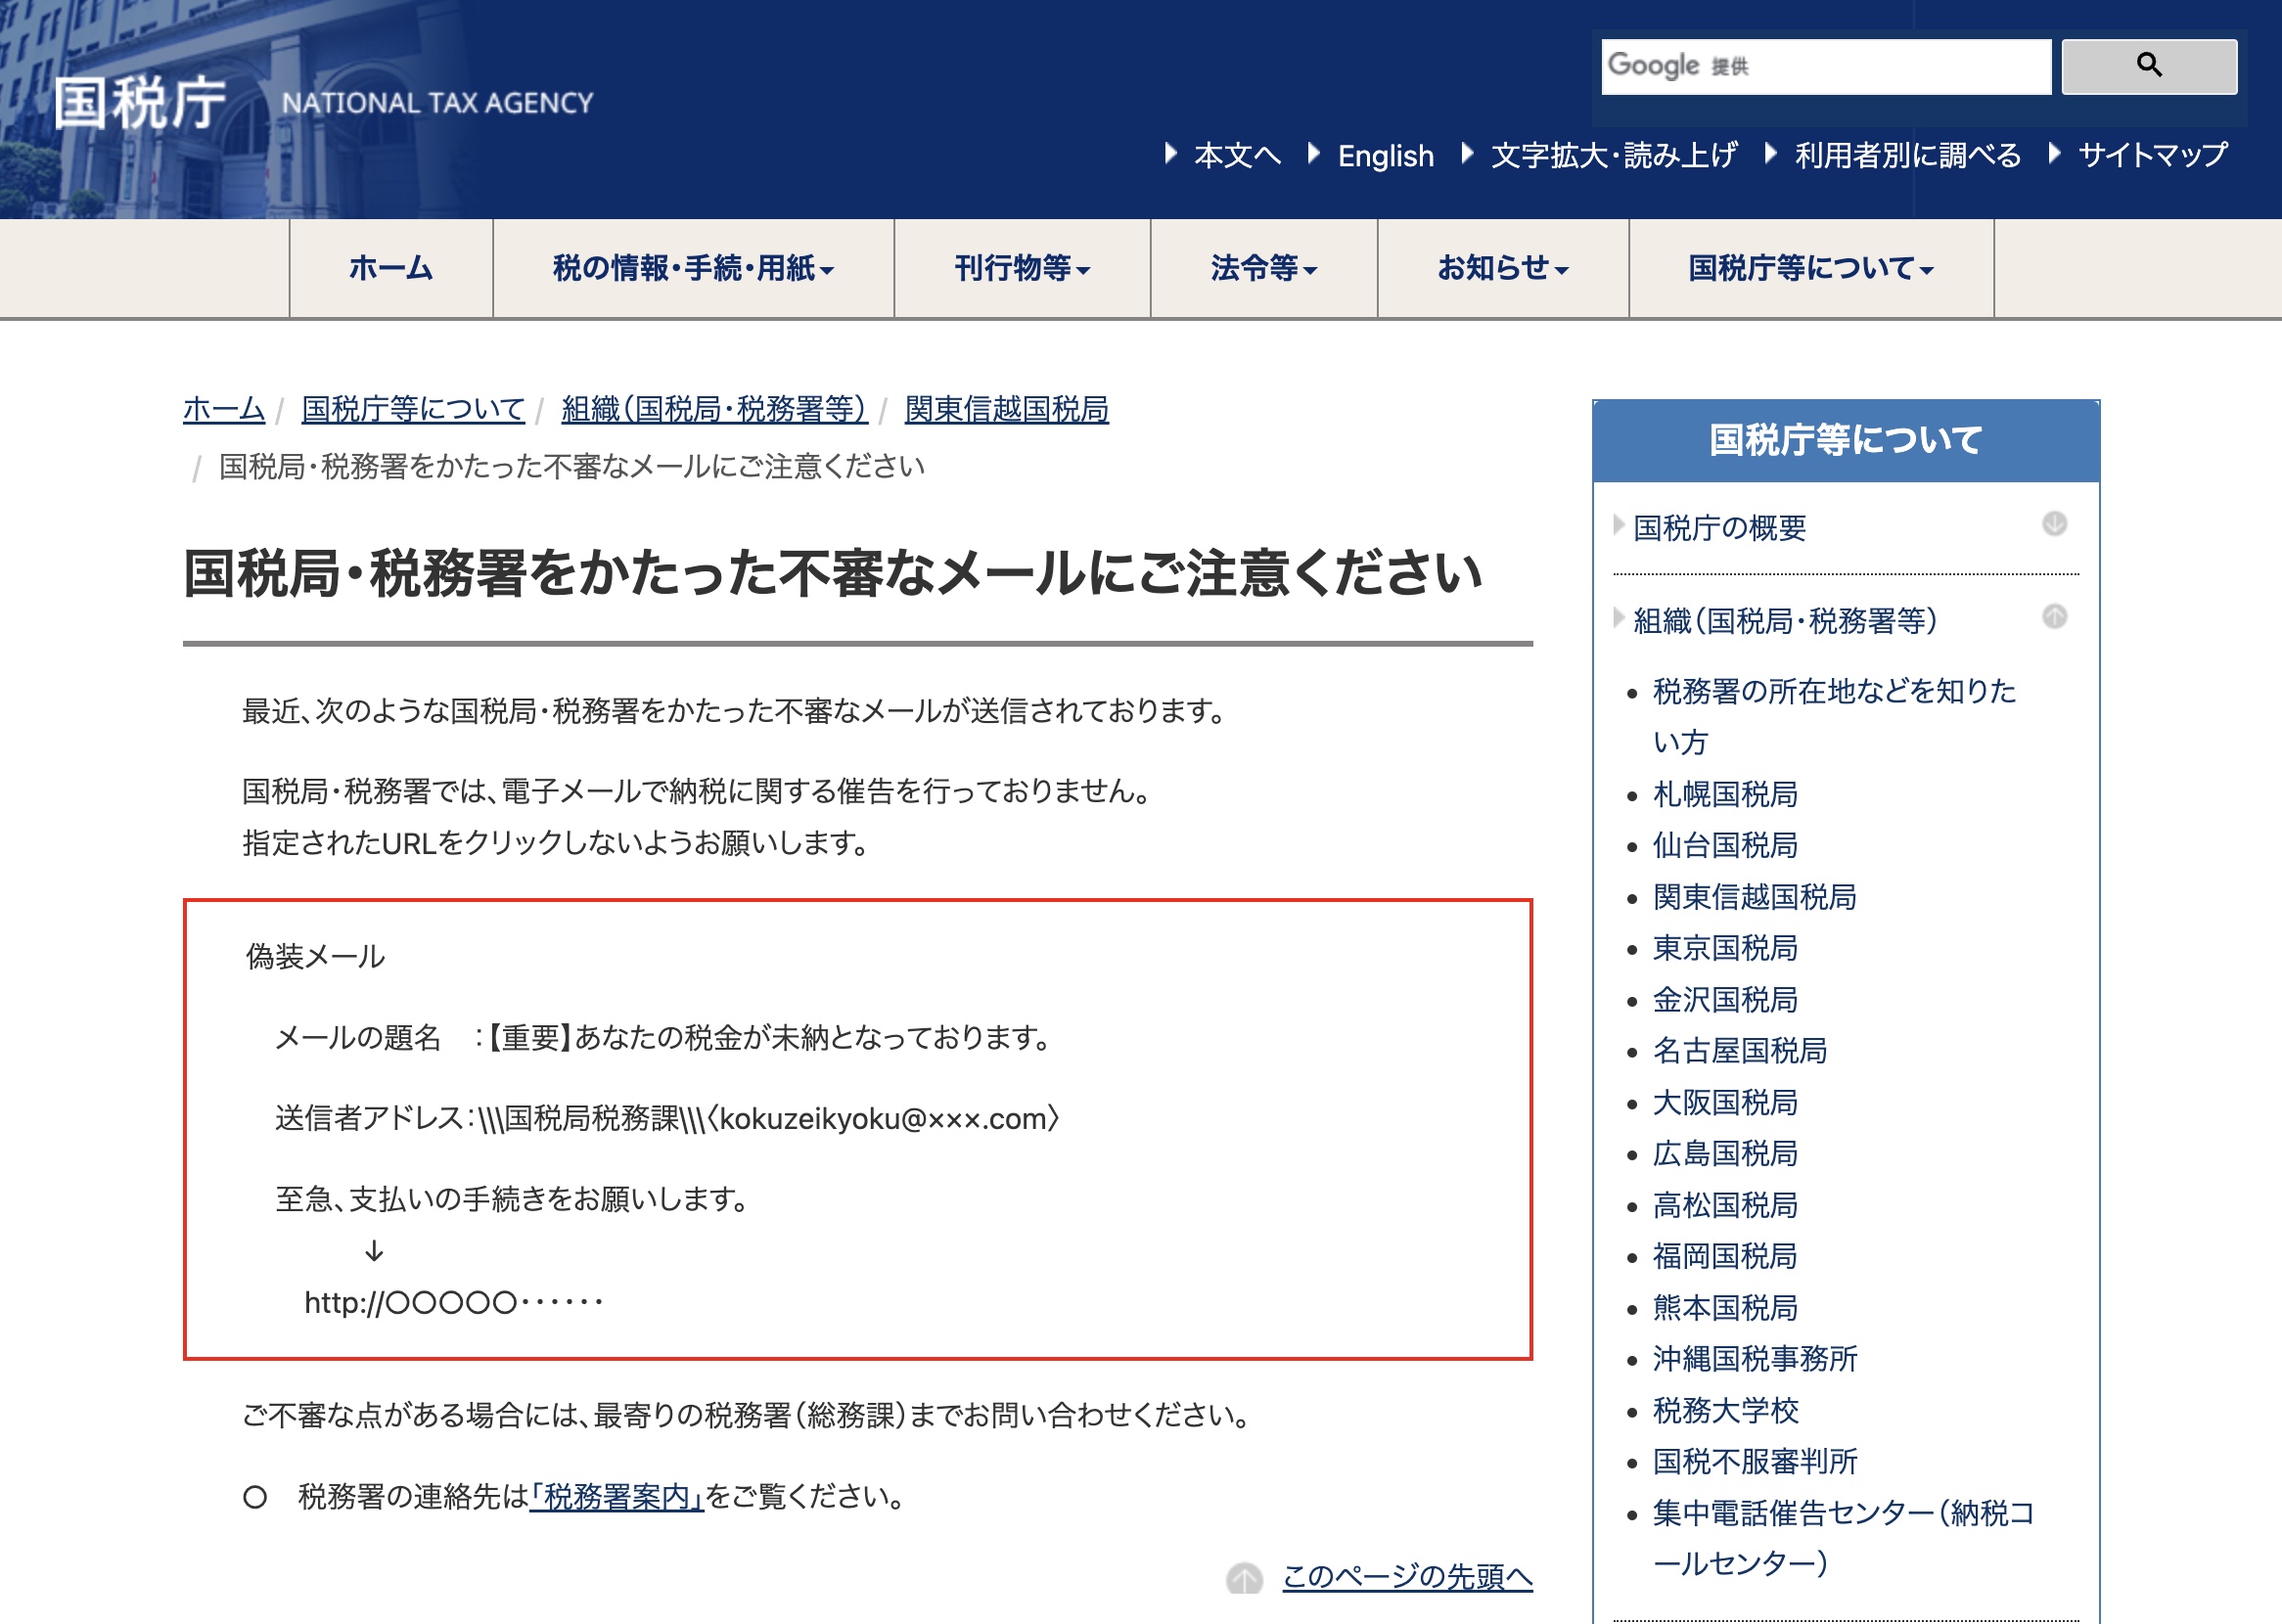 国税庁、税務局を装った「標的型メール」にご注意下さい | 札幌 加藤 